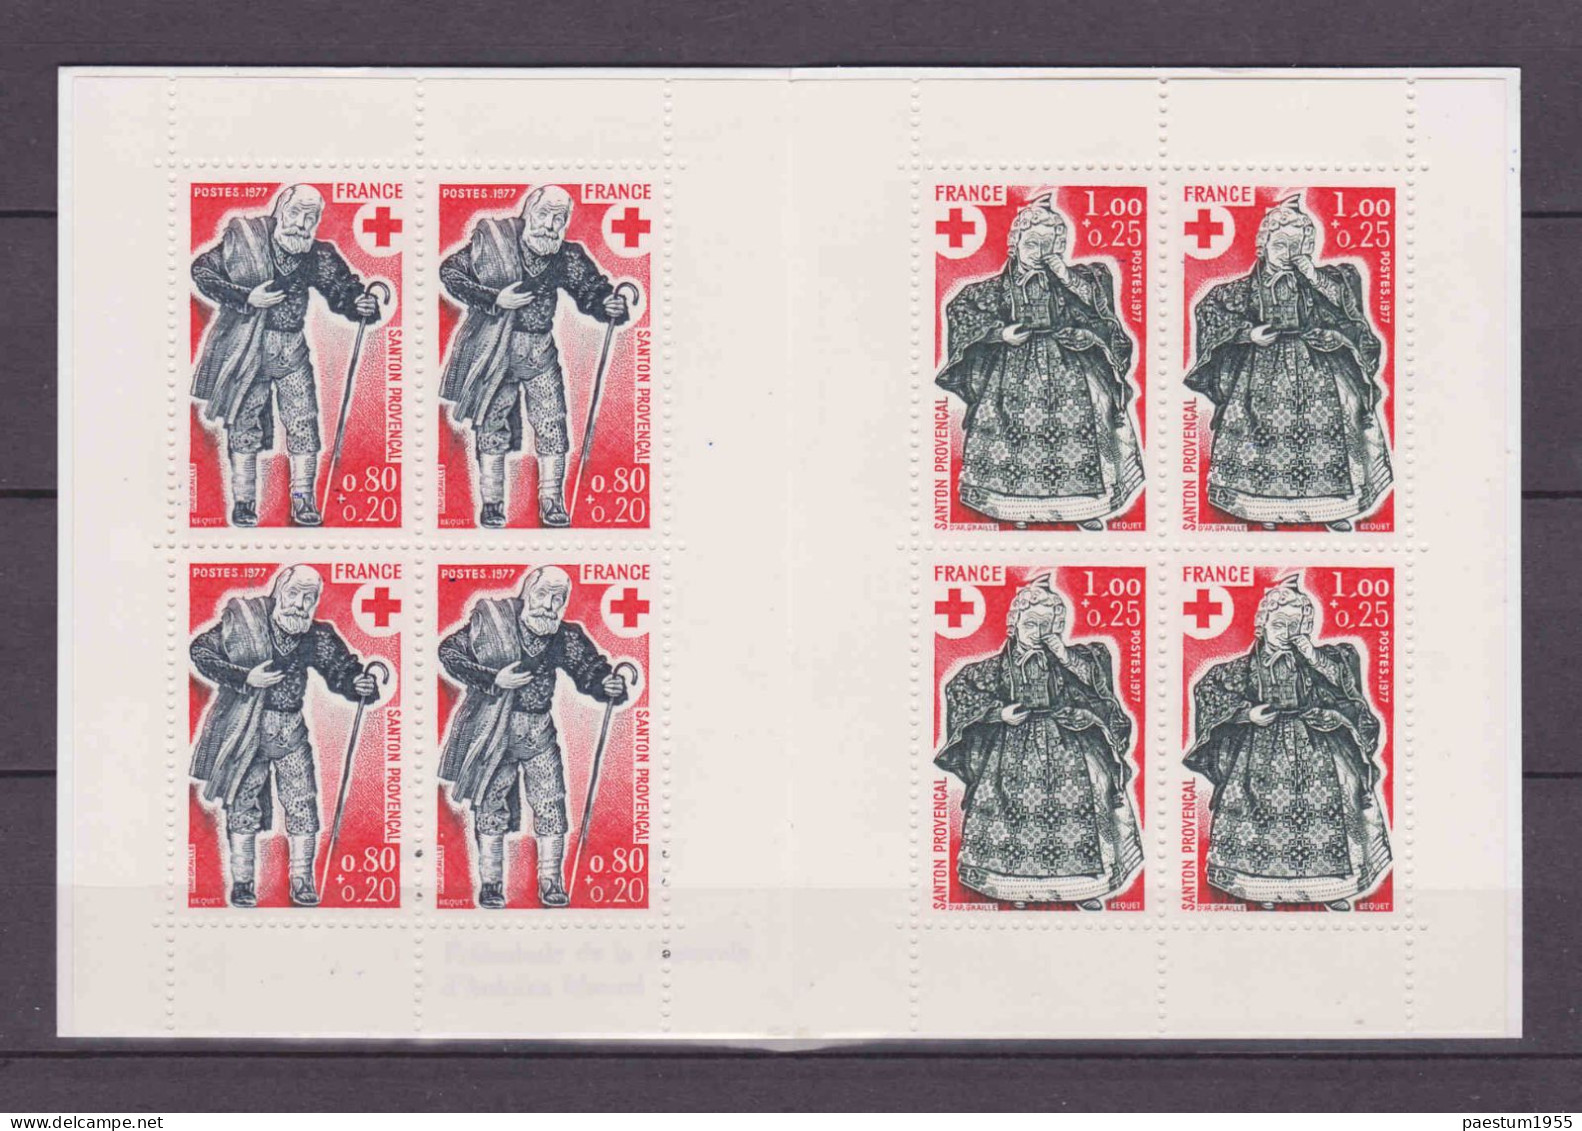 Carnet France Neuf** MNH 1977 Croix-Rouge Française N° 2026 Les Santons De Provence - Croce Rossa